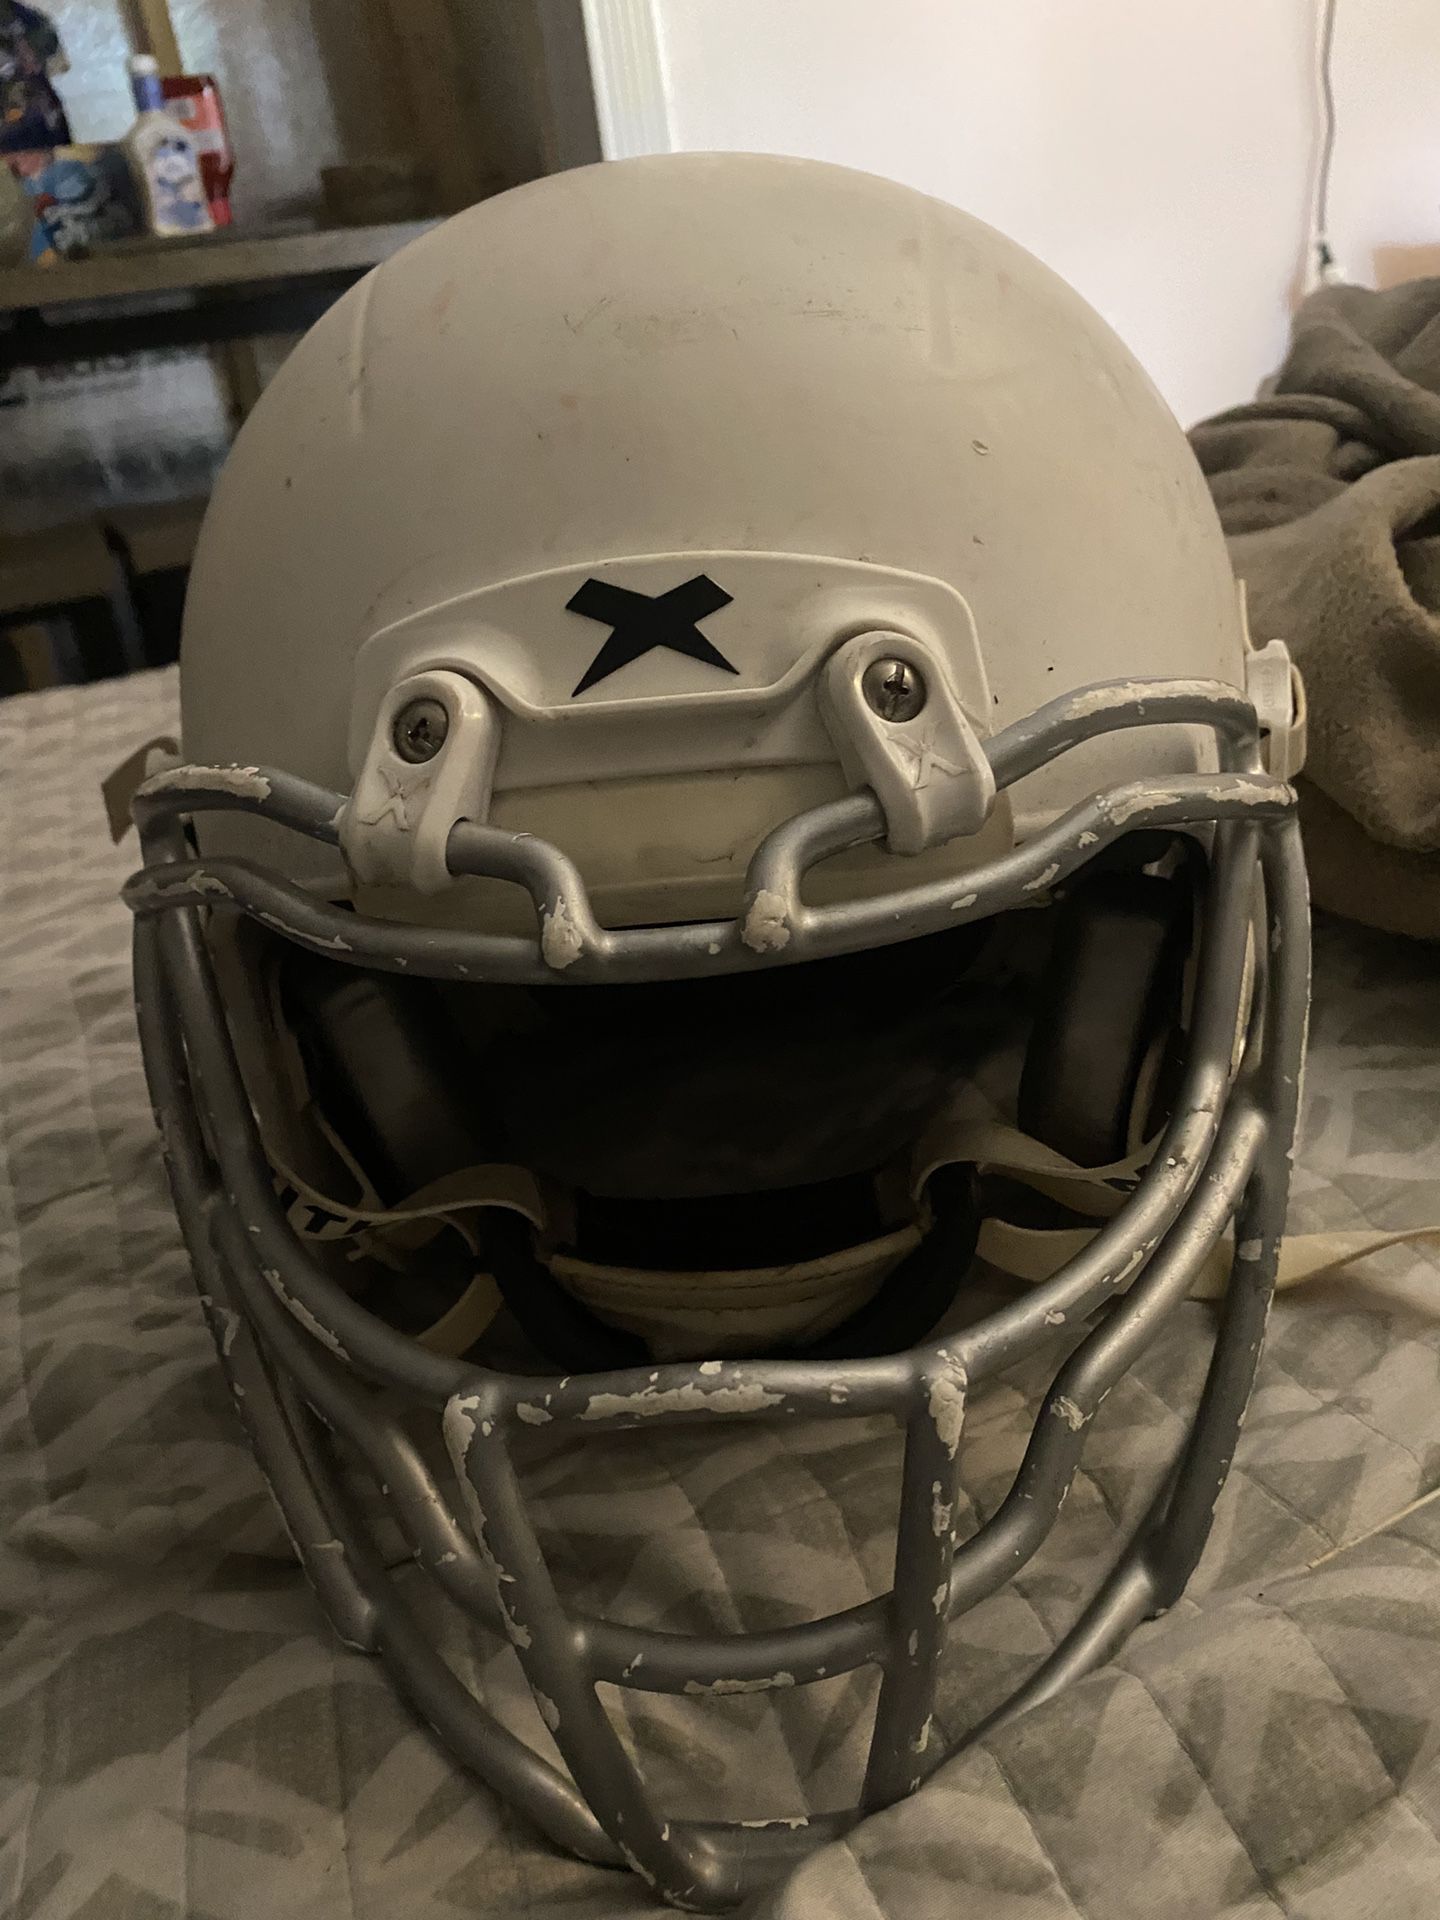 Football Helmet 